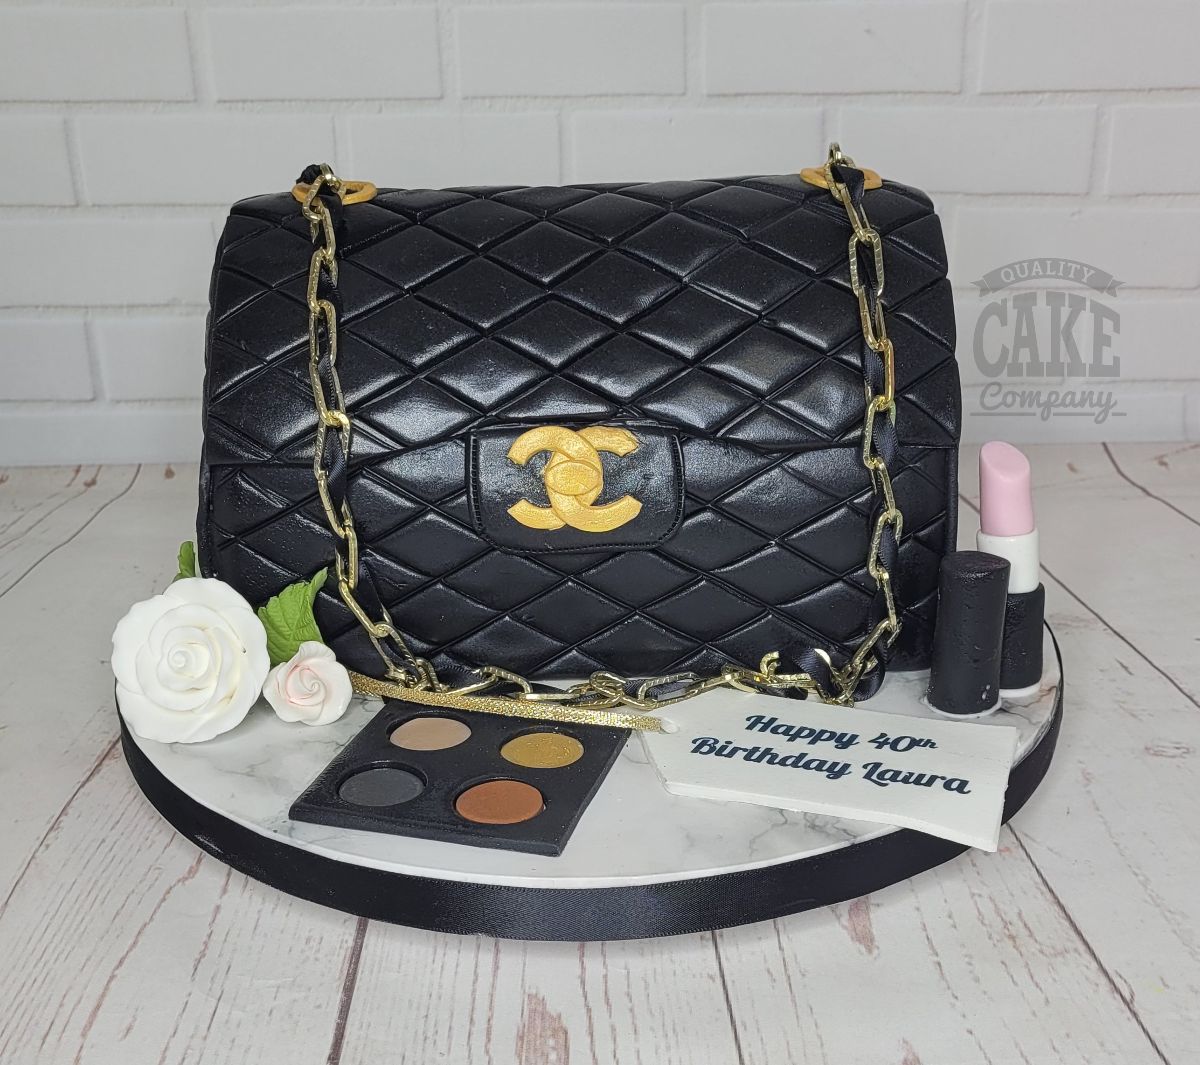 Designer Handbag Cake - YouTube